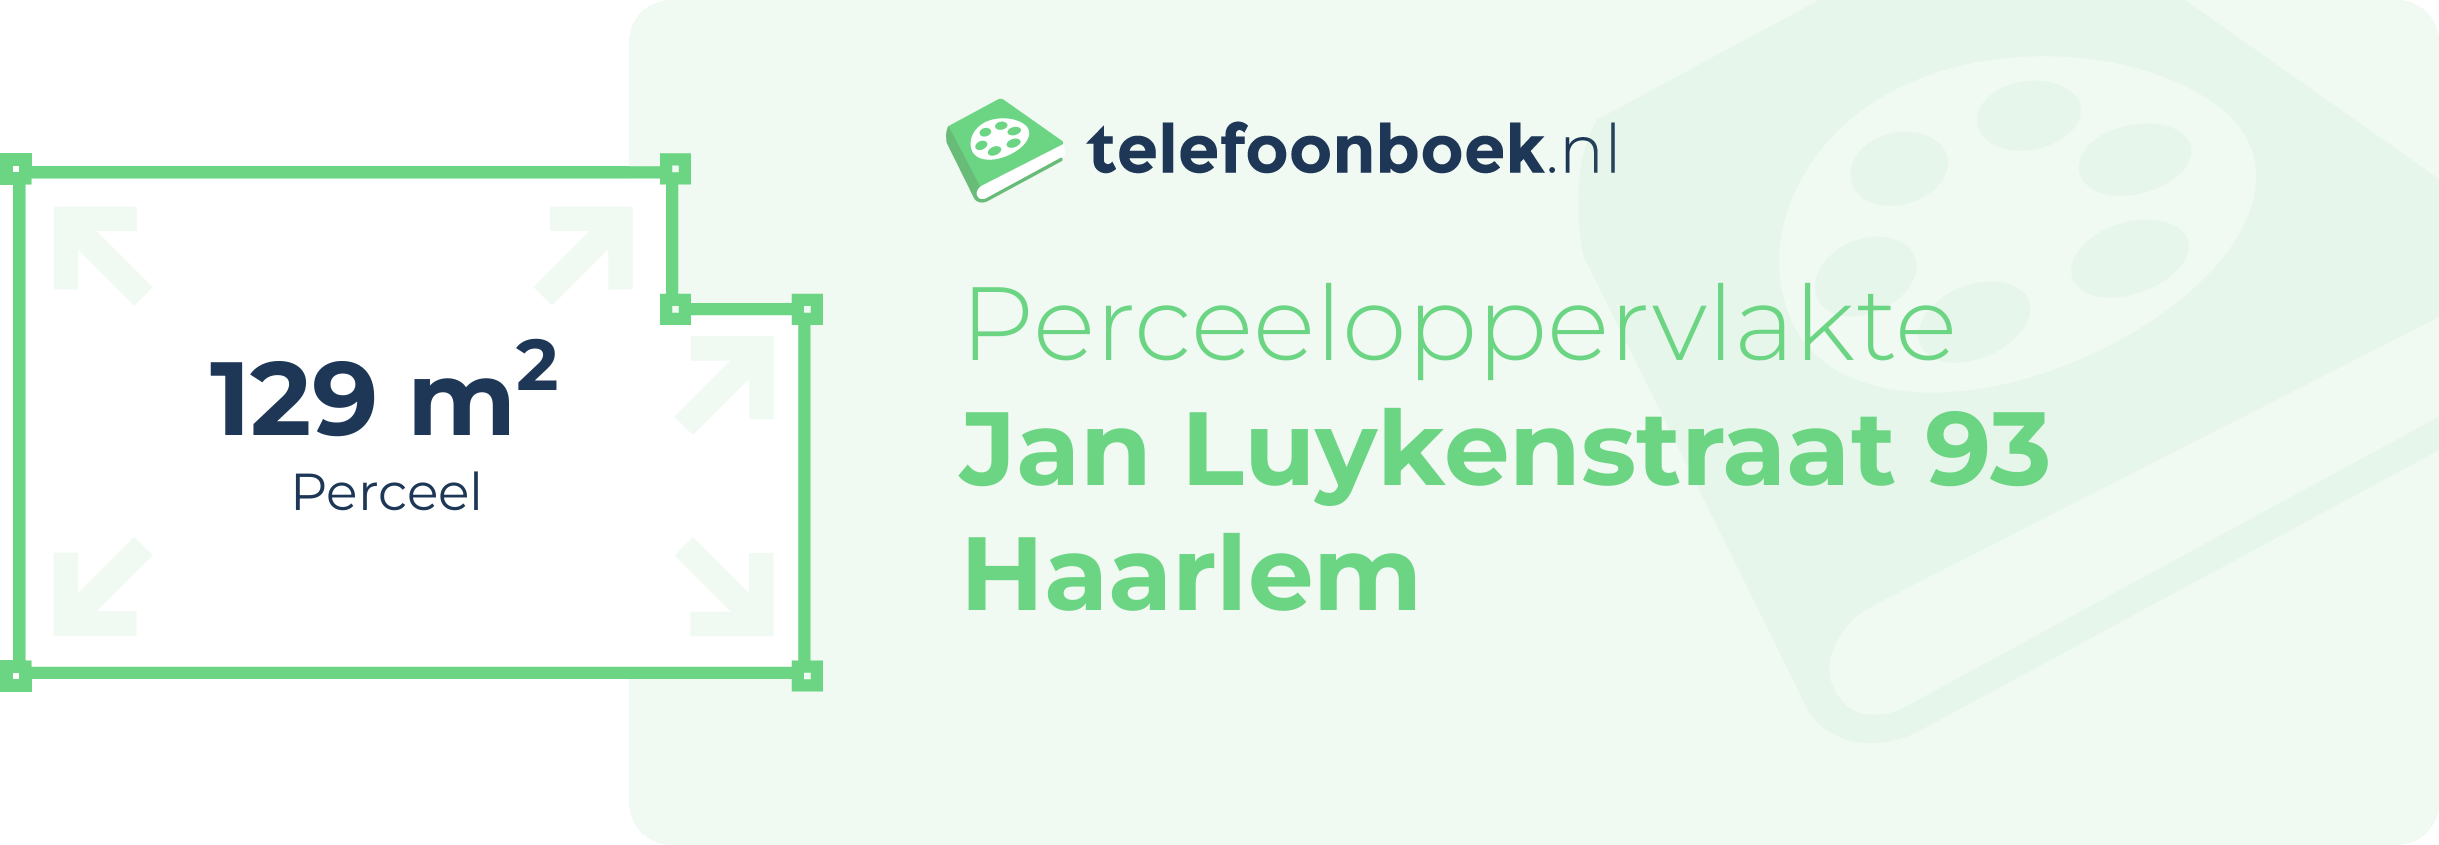 Perceeloppervlakte Jan Luykenstraat 93 Haarlem